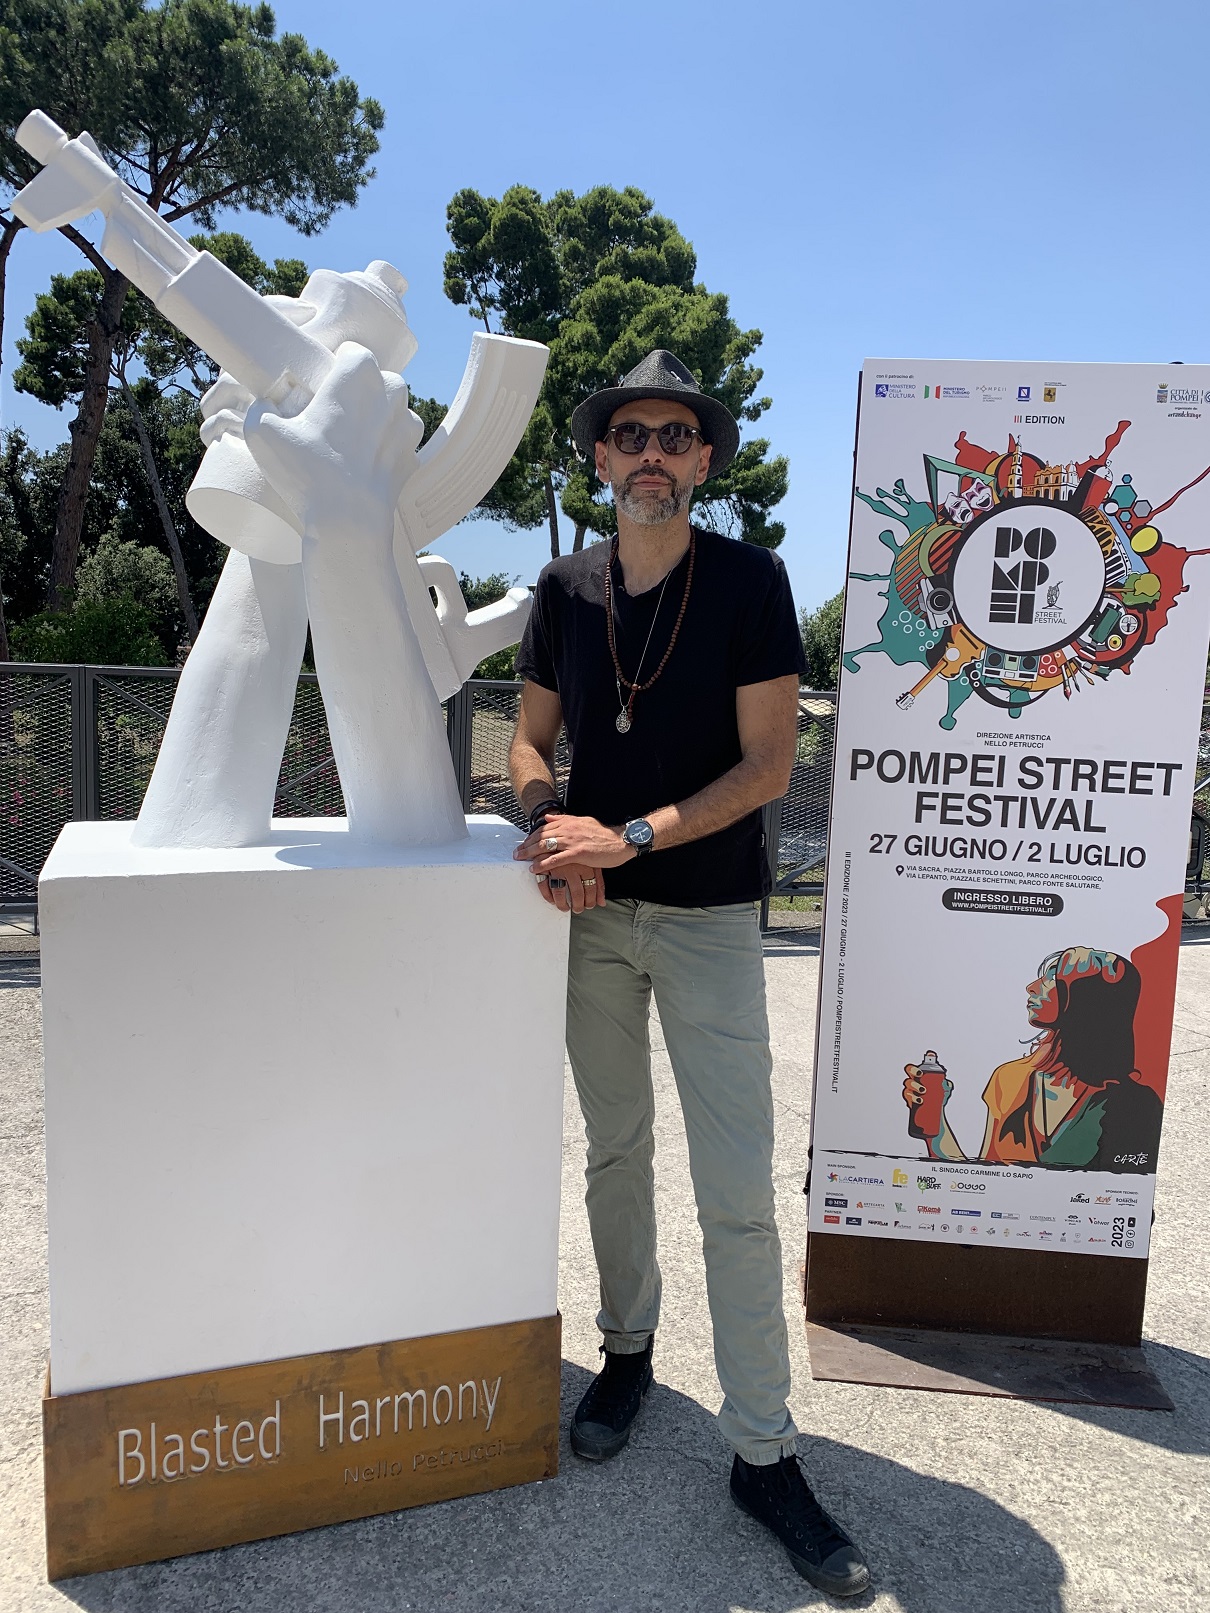 Strepitoso successo per il Pompei Street Festival: record di presenze